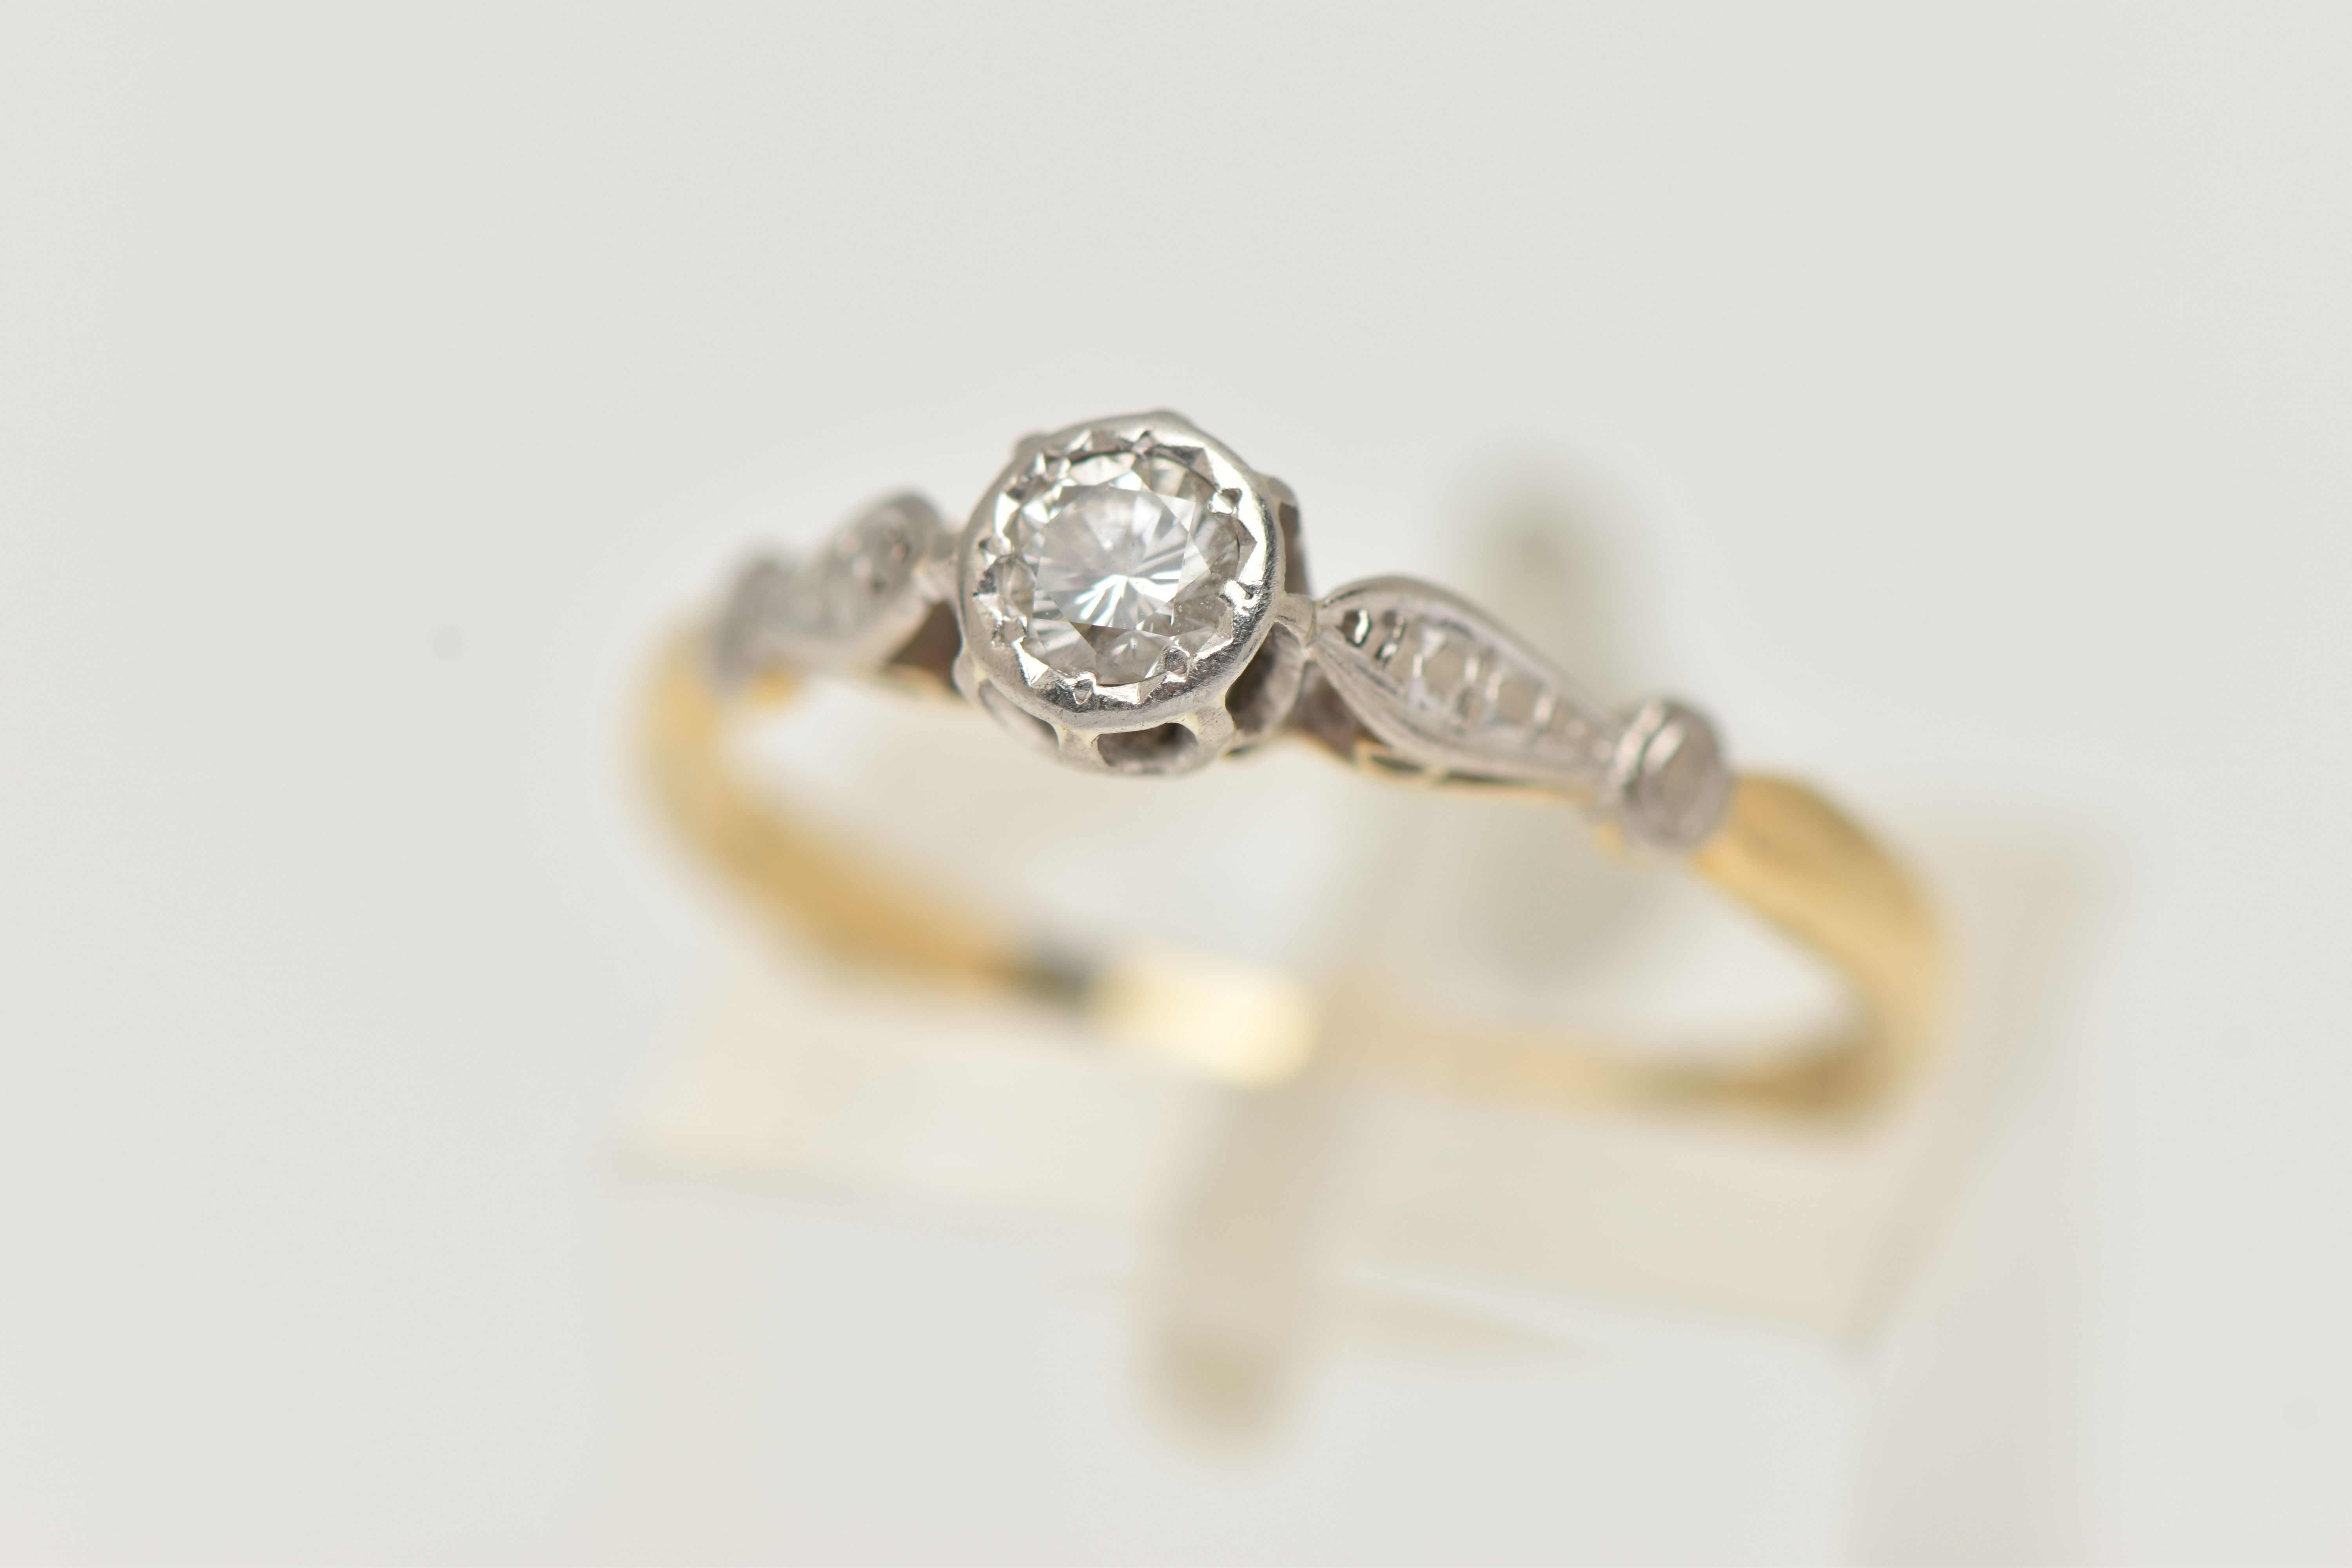 A YELLOW AND WHITE METAL DIAMOND SINGLE STONE RING, illusion set round brilliant cut diamond,